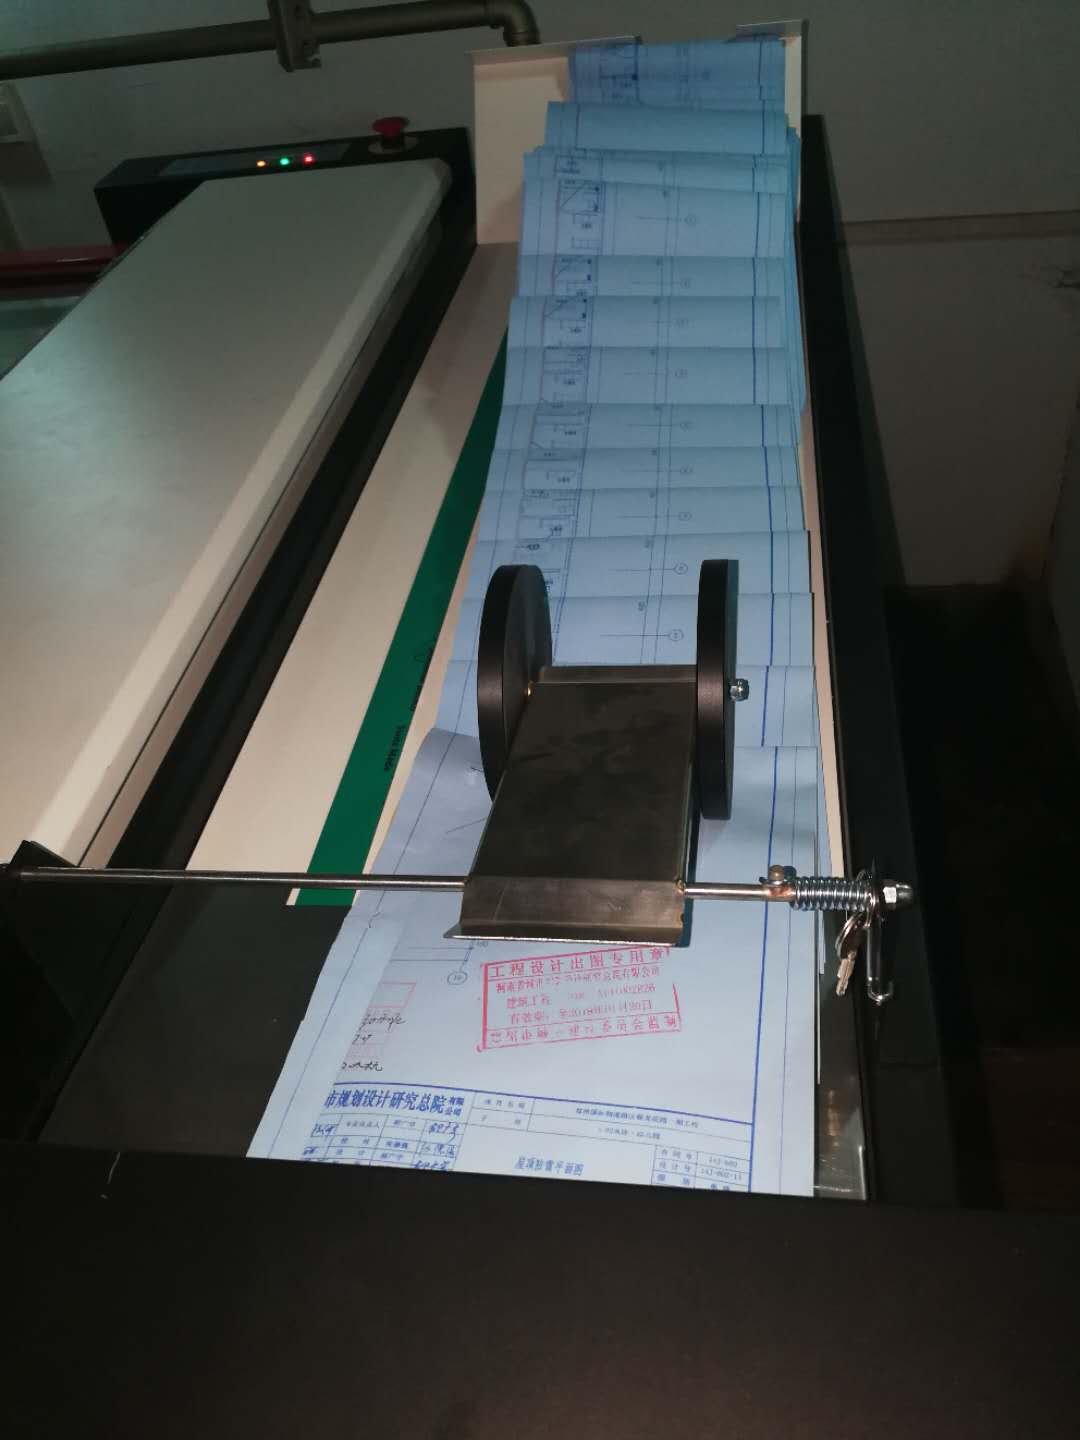 郑州西大学科技园图文快印、工程蓝图、红章蓝图打印、机器叠图装订、工程彩图打印扫描归档